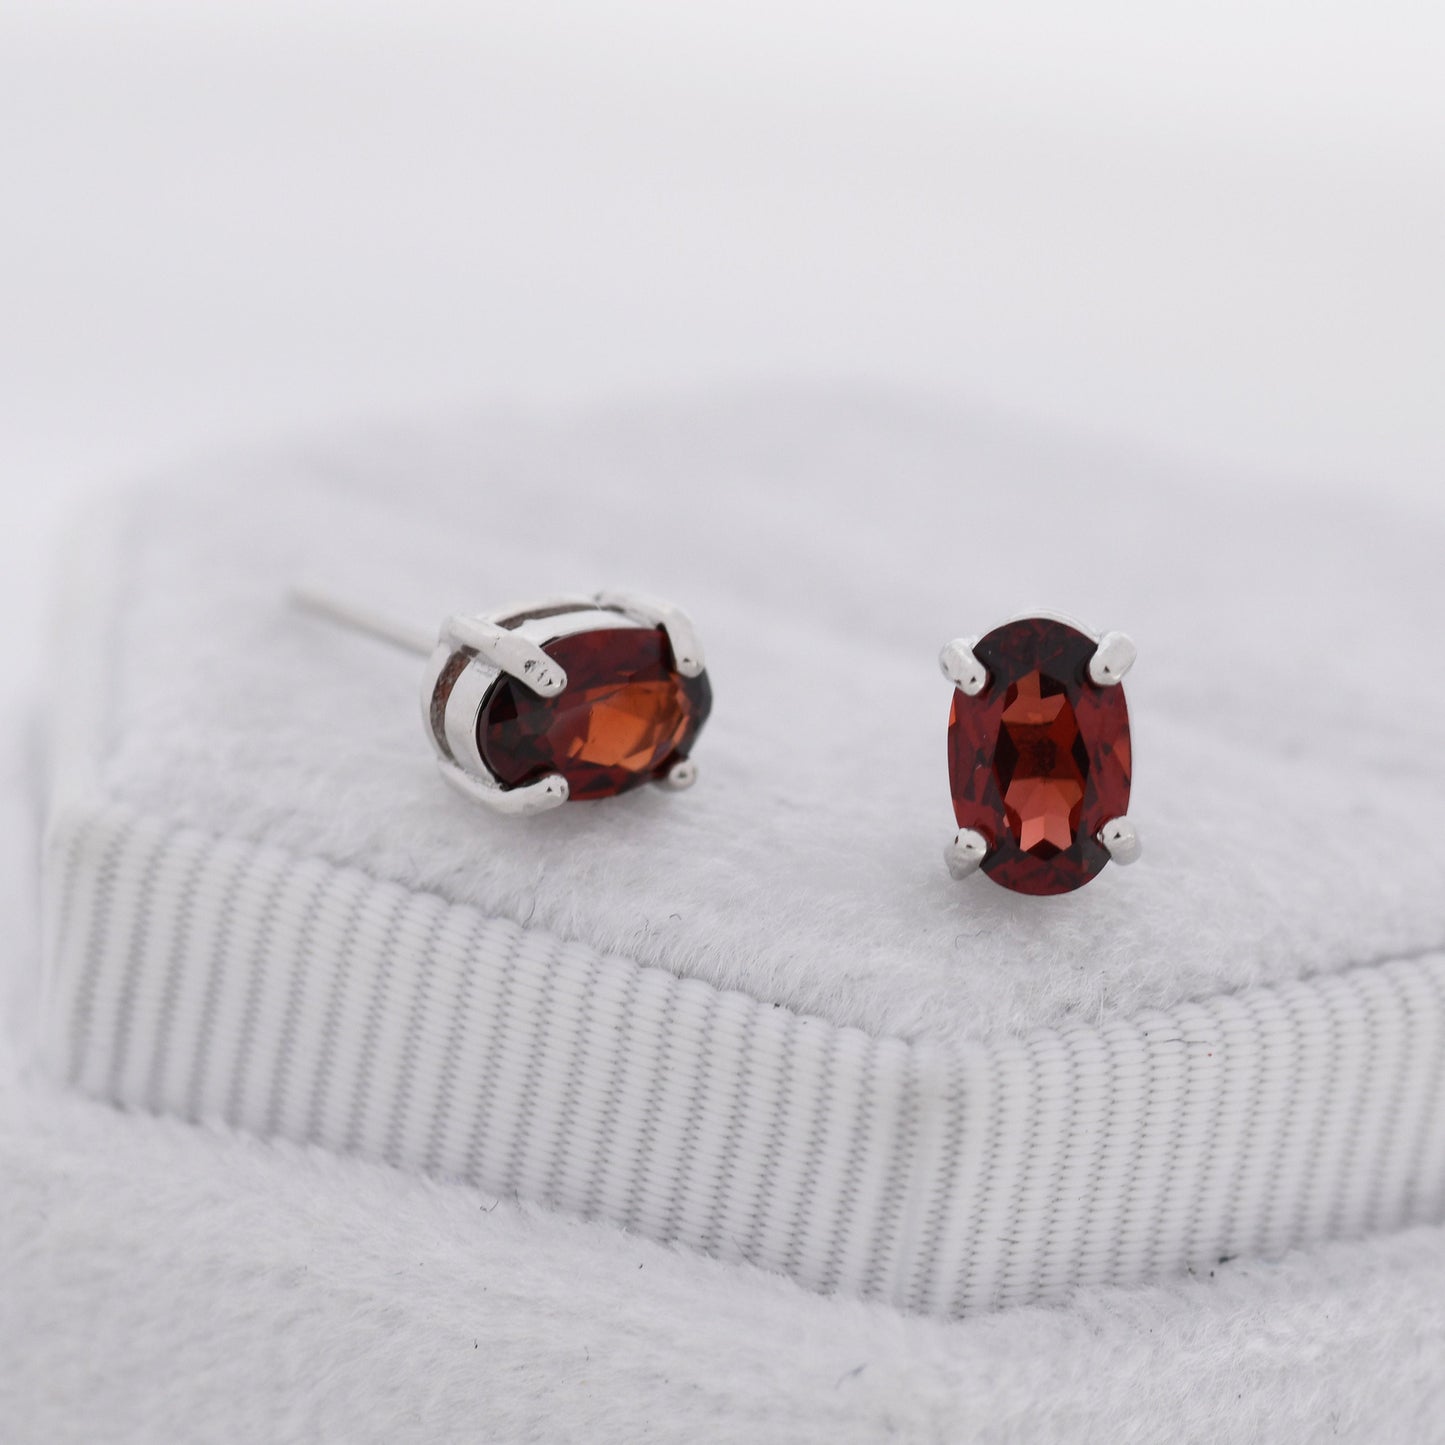 Genuine Garnet Crystal Stud Earrings in Sterling Silver, Natural Red Garnet Oval Earrings, January Birthstone